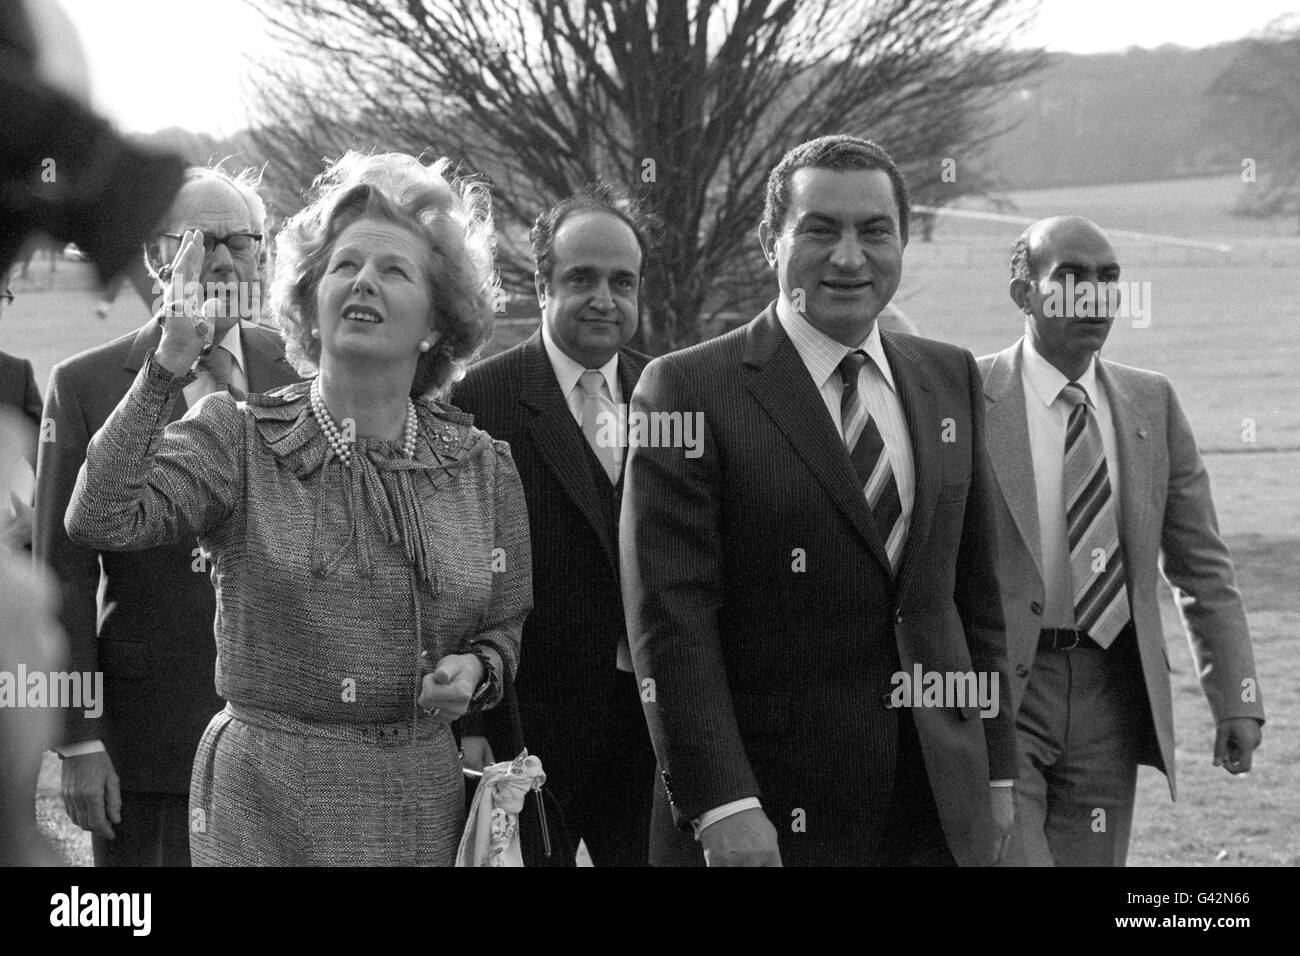 Ägyptens Präsident Hosni Mubarak führt mit der britischen Premierministerin Margaret Thatcher durch das Gelände der Chequers, als sie sich zu Gesprächen traf. Stockfoto